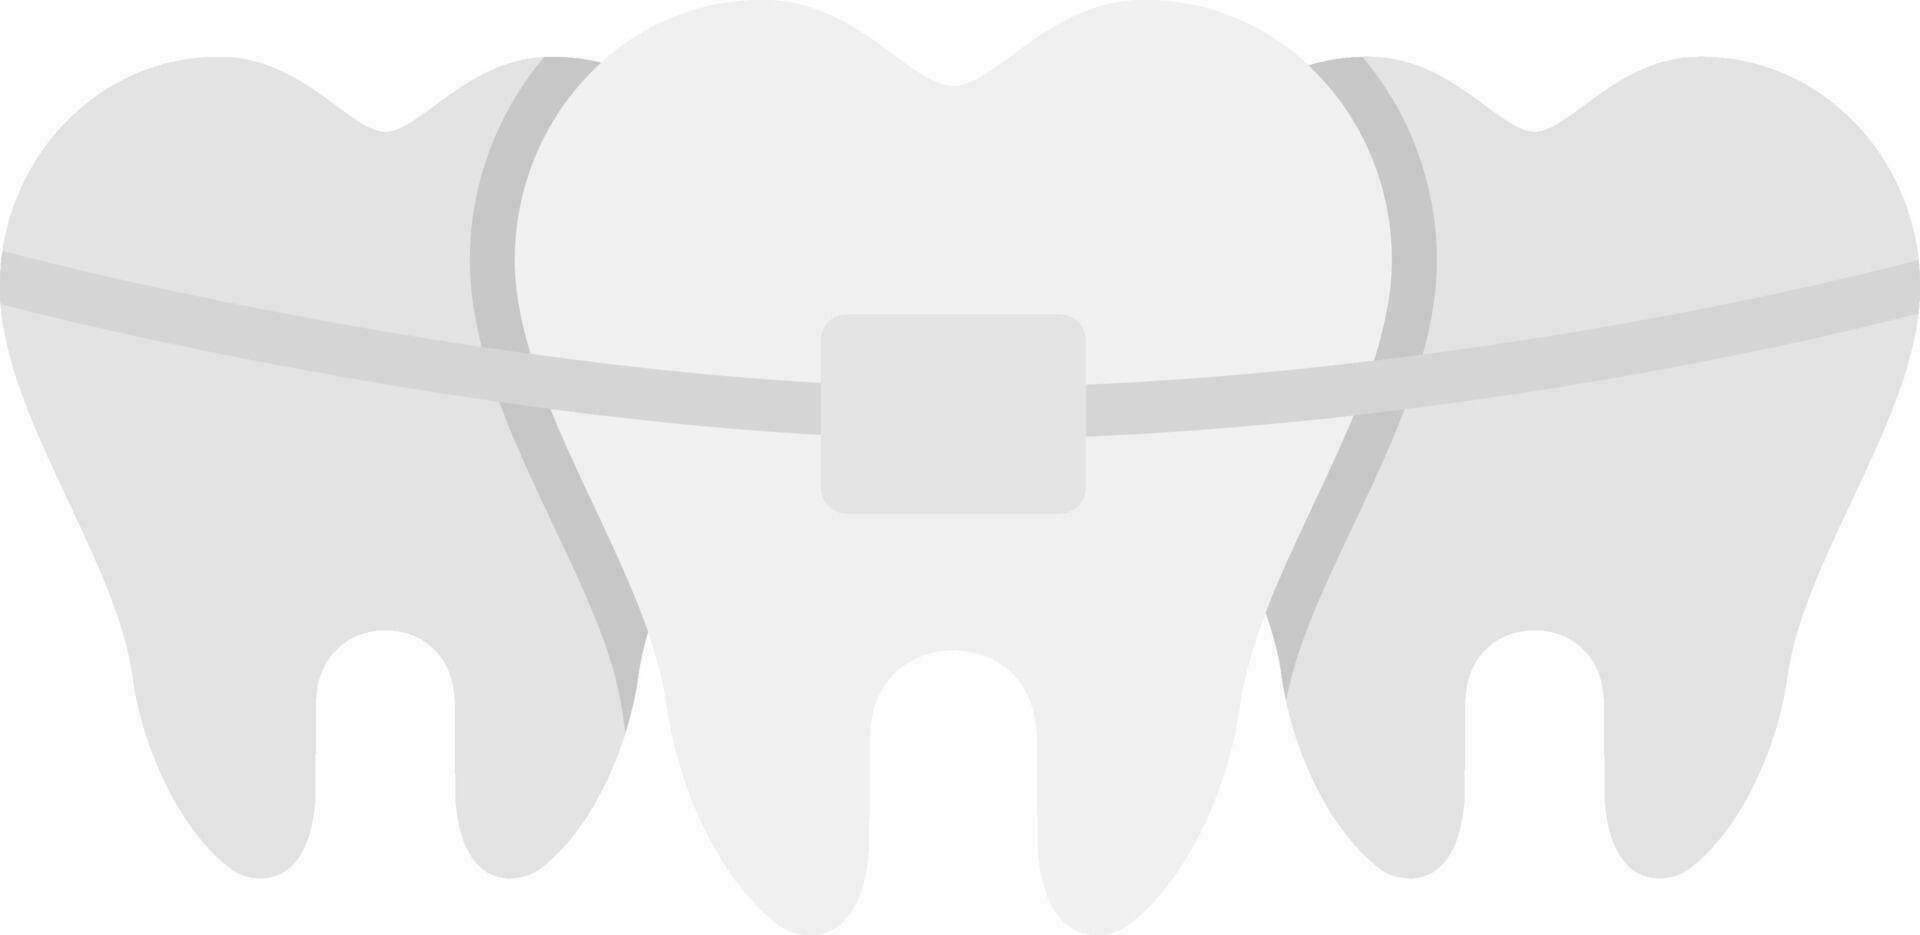 roto diente vector icono diseño